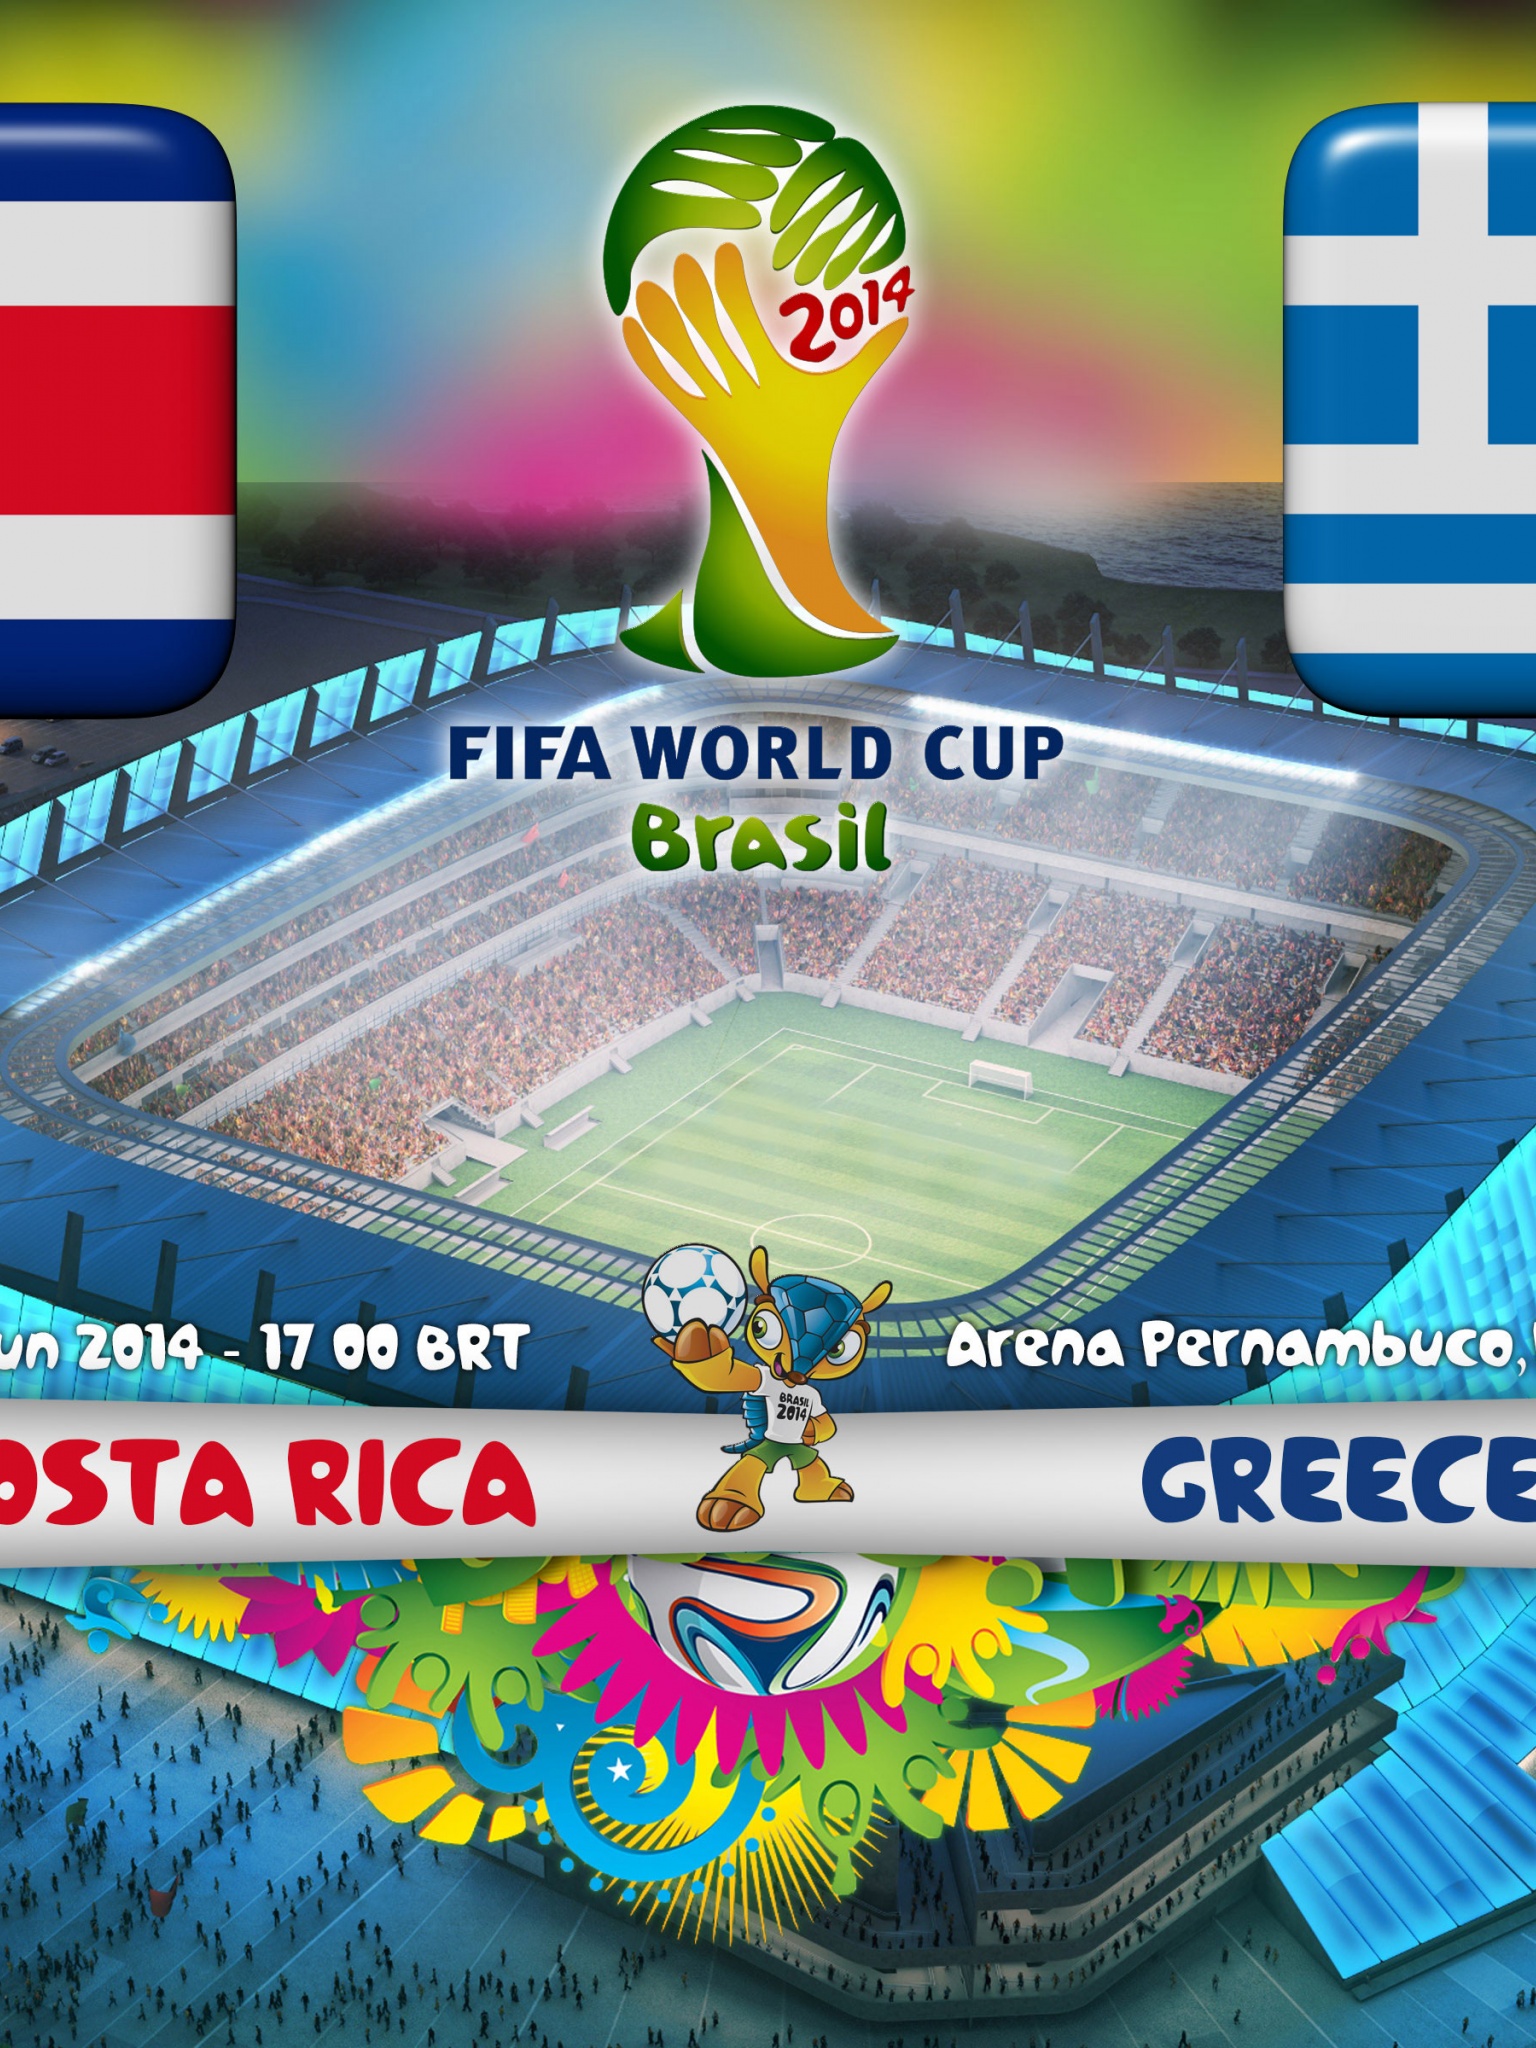 Costa Rica Vs Greece World Cup 2014